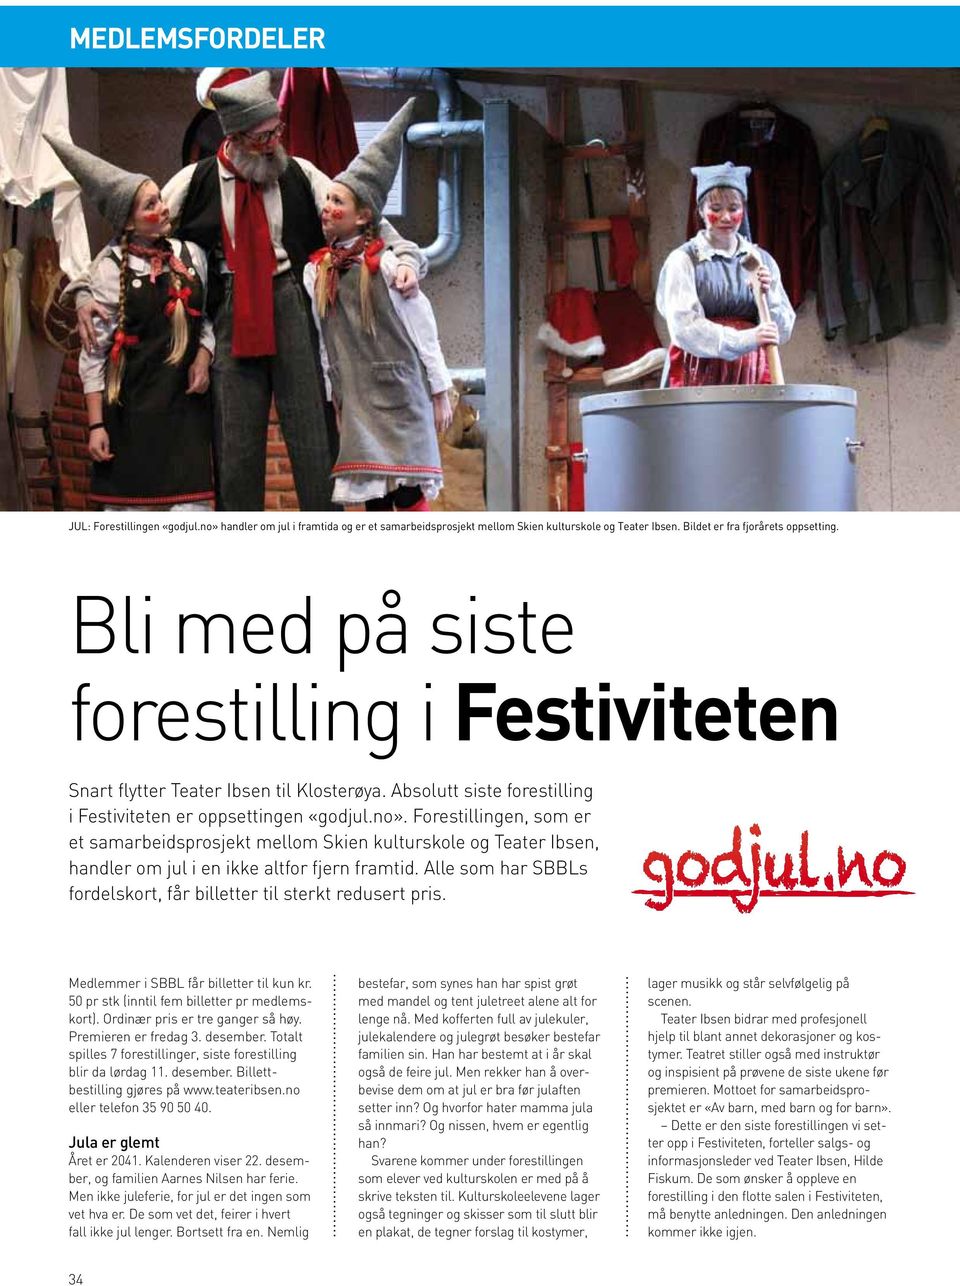 Forestillingen, som er et samarbeidsprosjekt mellom Skien kulturskole og Teater Ibsen, handler om jul i en ikke altfor fjern framtid.